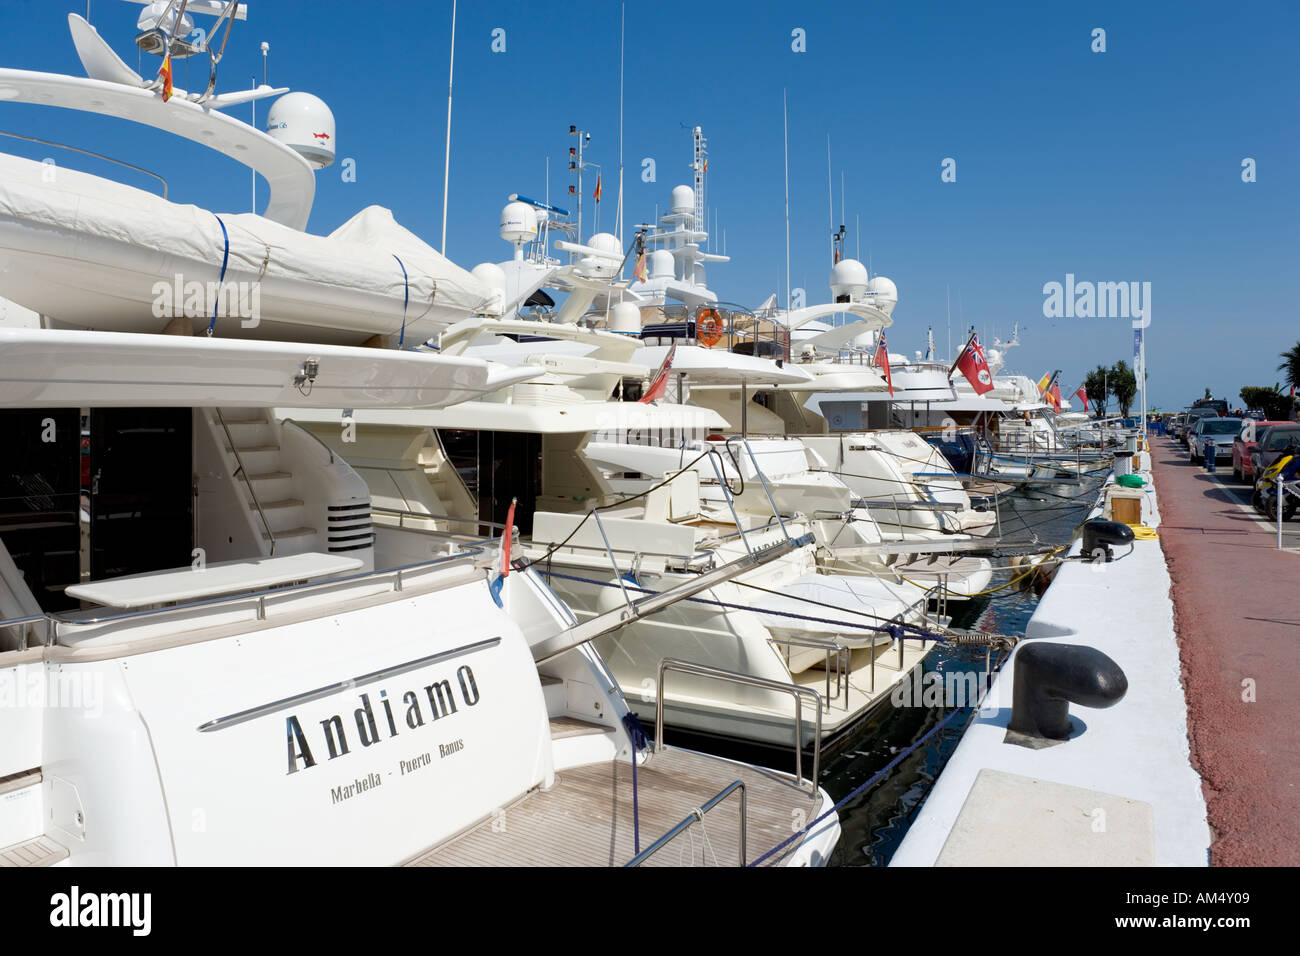 Des yachts de luxe dans le port de plaisance, Puerto Banus, Costa del Sol, Andalousie, Espagne Banque D'Images